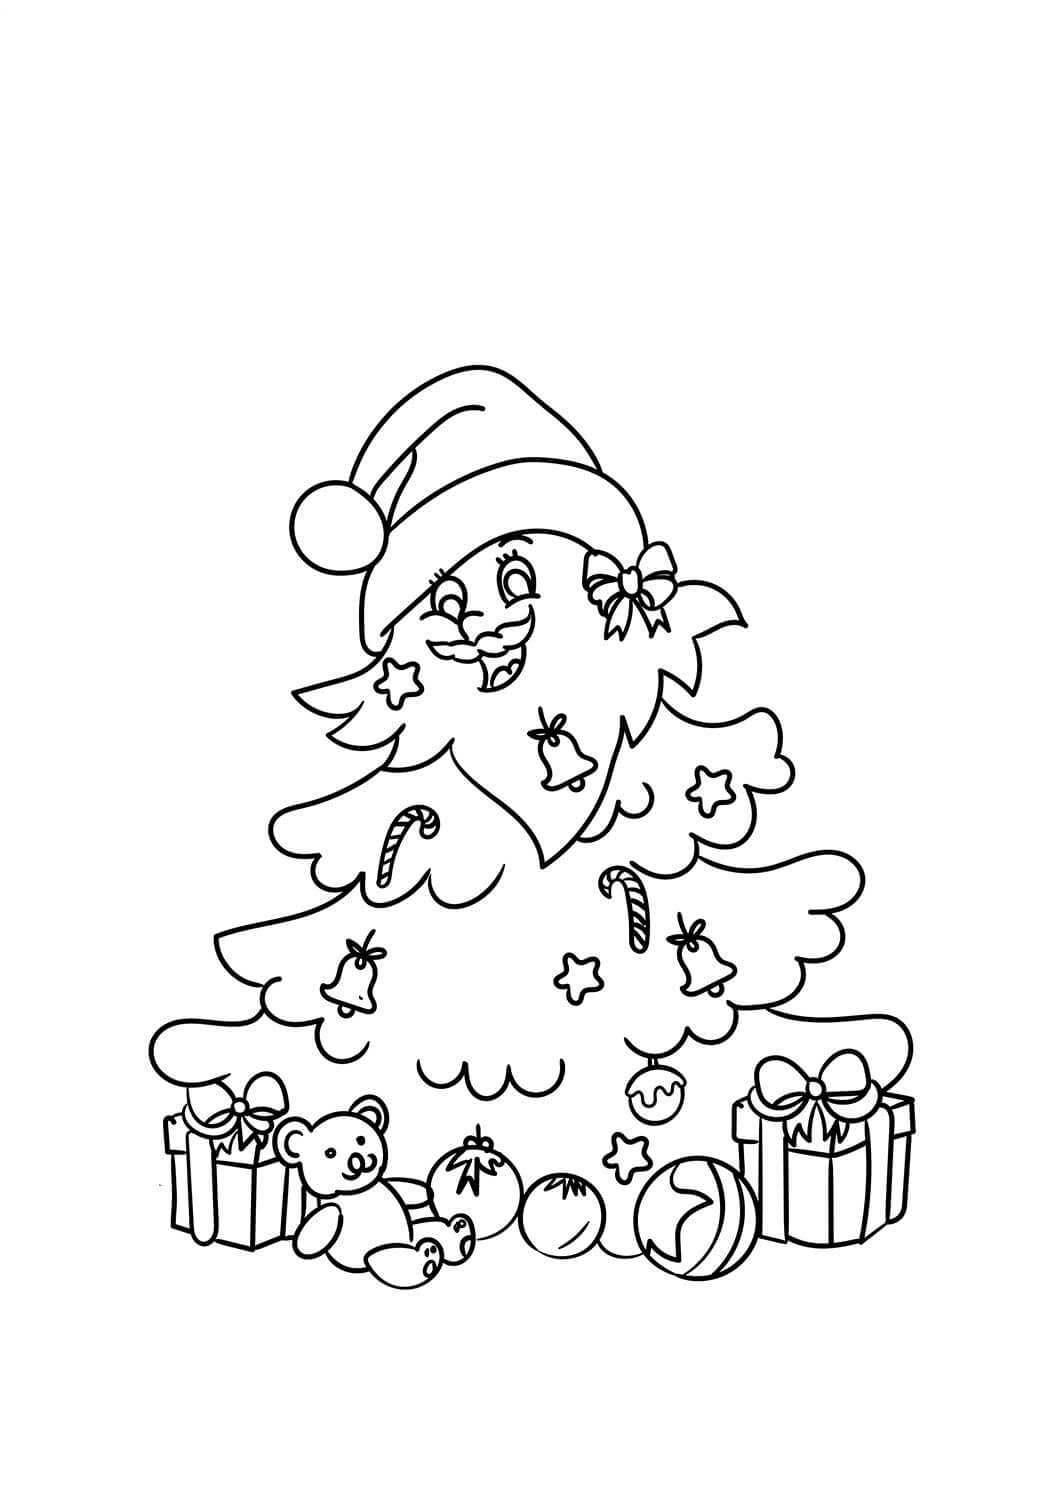 Karikatur-Weihnachtsbaum